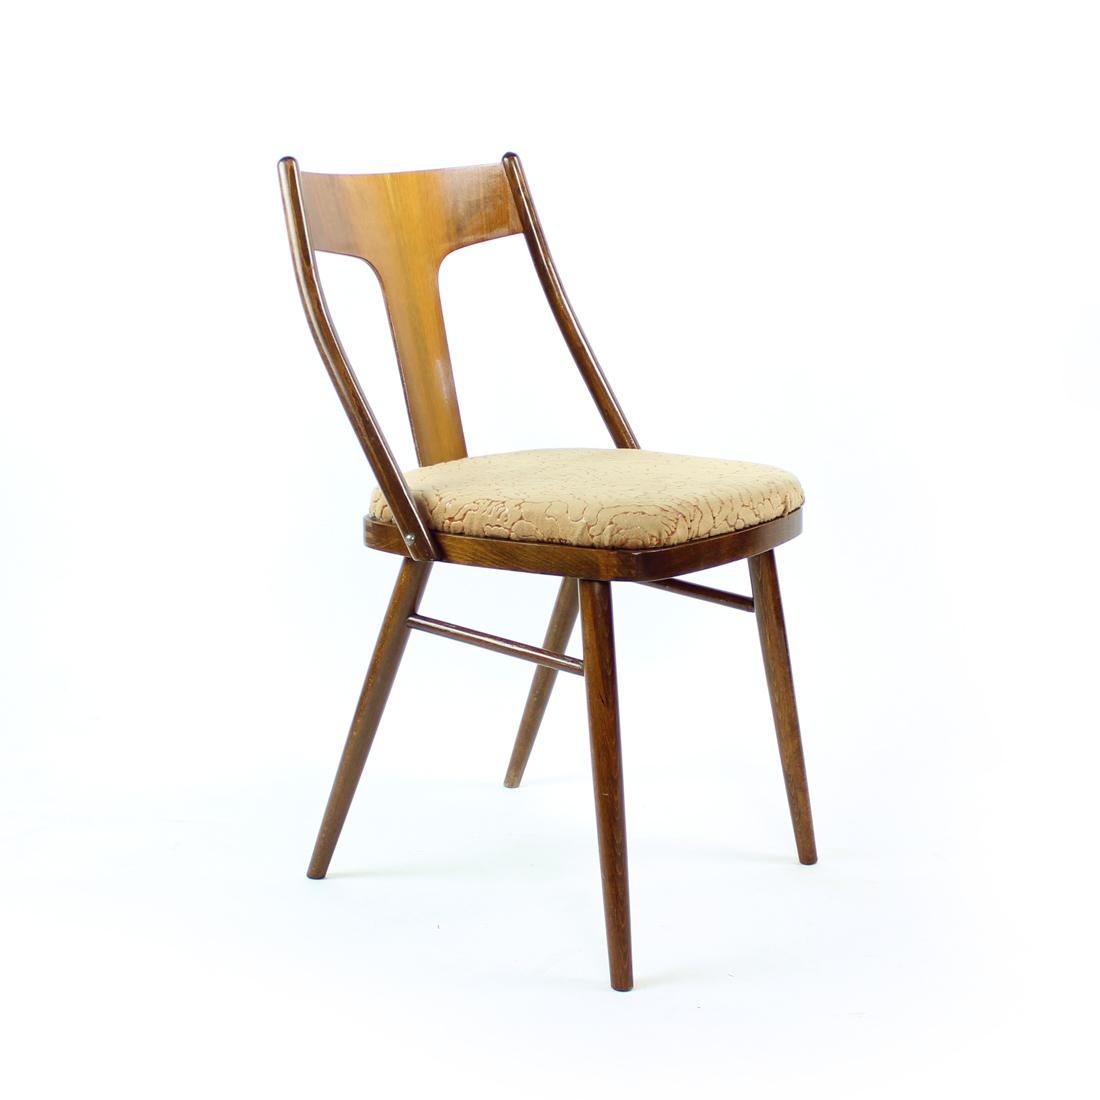 Magnifique ensemble de chaises de salle à manger élégantes de l'époque du milieu du siècle. Produit dans les années 1960 en Tchécoslovaquie. Les chaises sont construites en bois de chêne robuste avec un dossier élégant en forme de T avec une